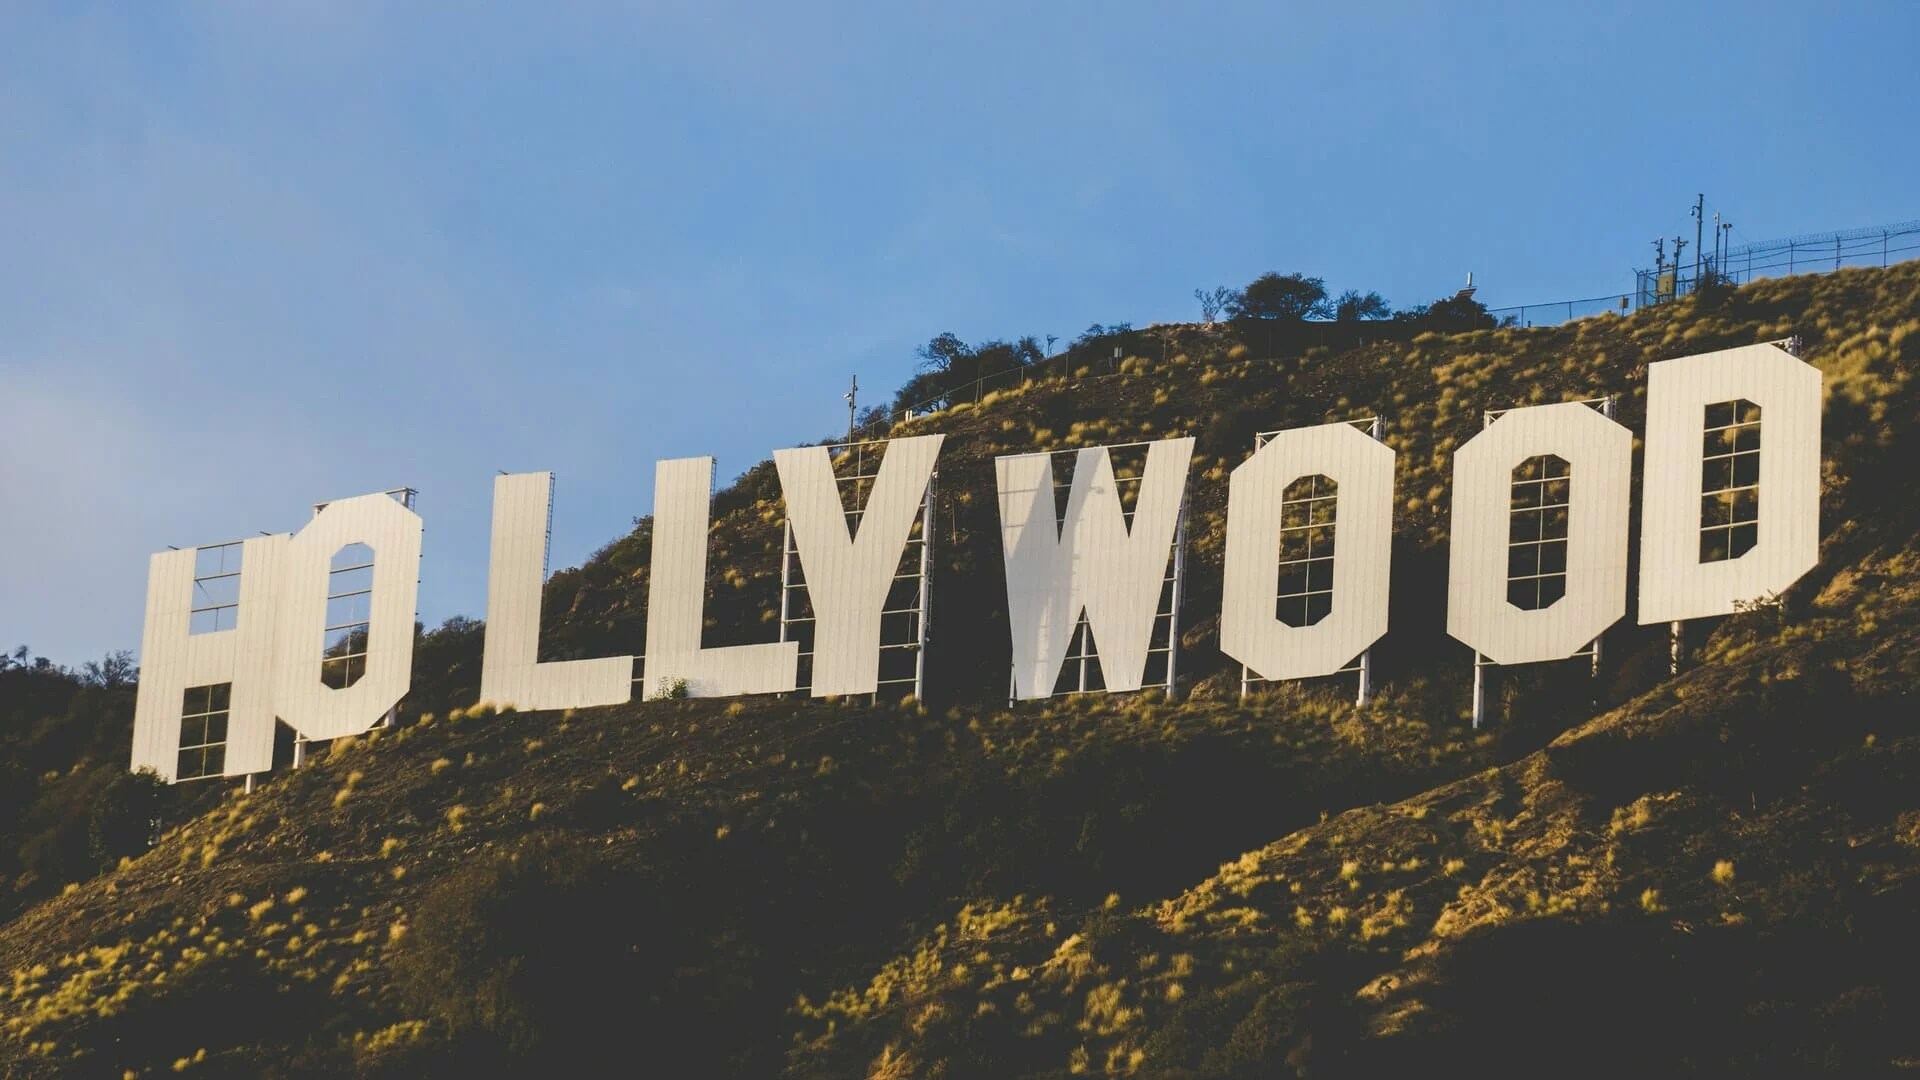 Comment se rendre au panneau Hollywood : guide avec carte